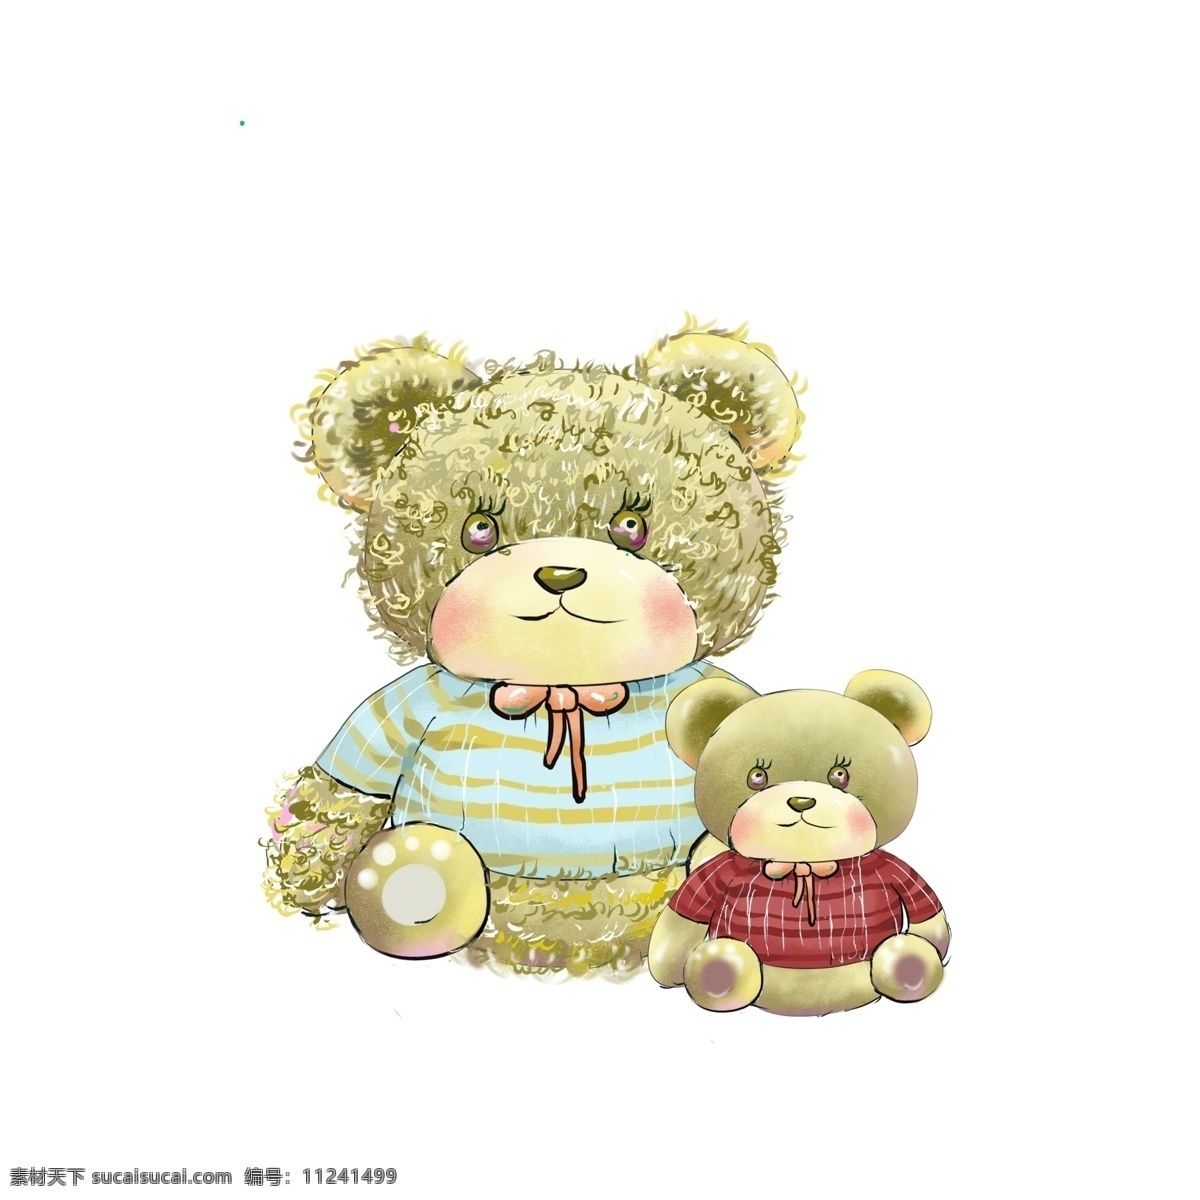 天猫 国际 毛绒玩具 熊 玩具 玩具熊 可爱 卡通 天猫国际 玩具节 手绘 毛绒玩具熊